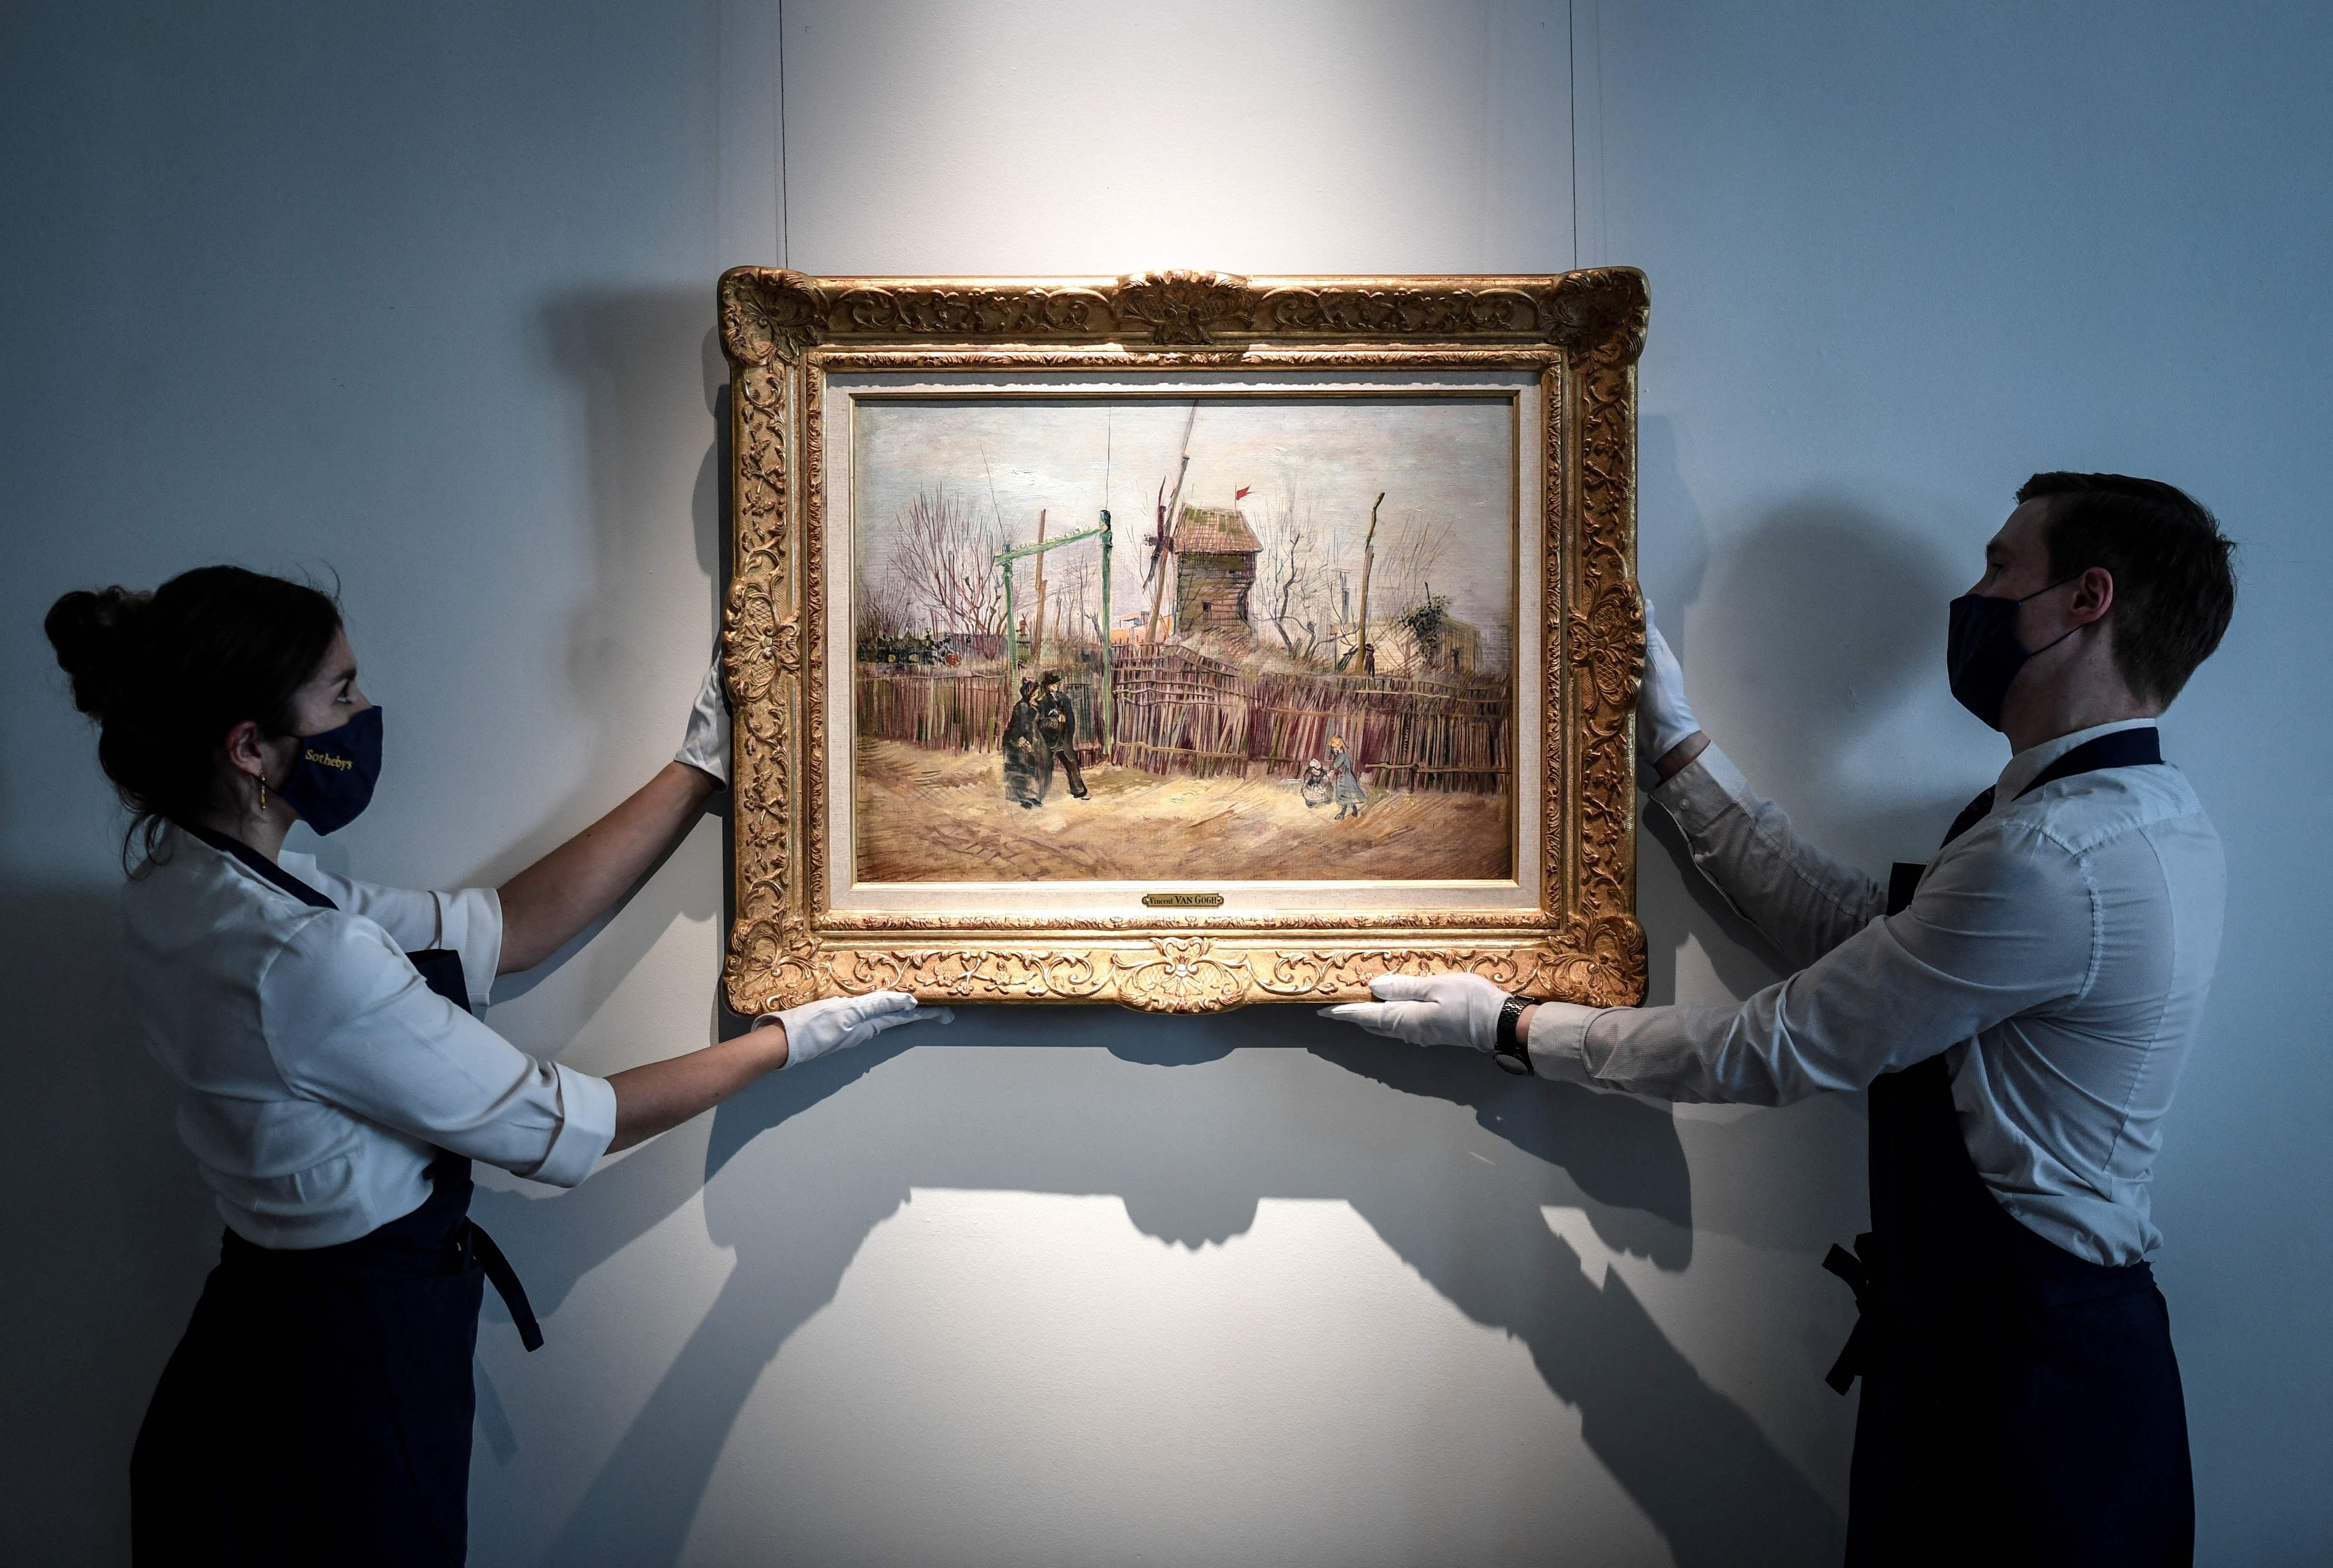 Muchas de las obras de Vincent Van Gogh son exhibidas en los museos más importantes de Europa, donde se extreman las medidas de seguridad para evitar que estas sean robadas. (Foto Prensa Libre: AFP)